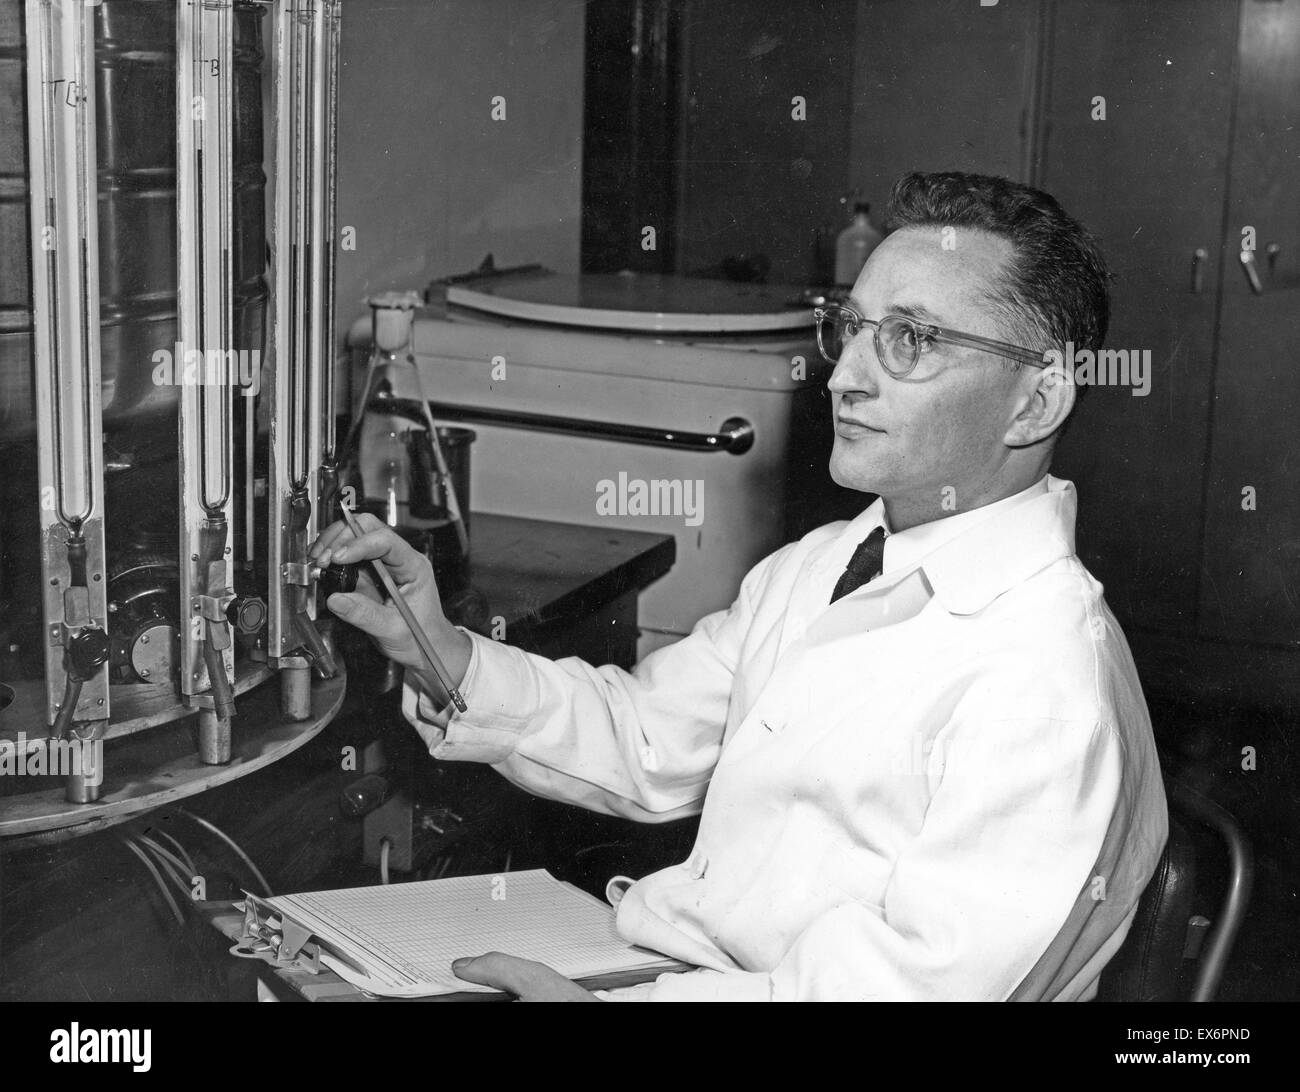 Sol Spiegelman (1914-1983) fue un biólogo molecular estadounidense cuyos descubrimientos pioneros aceleró el estudio de genes de mecanismos y sentó las bases de la tecnología de ADN recombinante. Sol Spiegelman trabajan en el laboratorio de la Universidad de Illinois 1951 Foto de stock